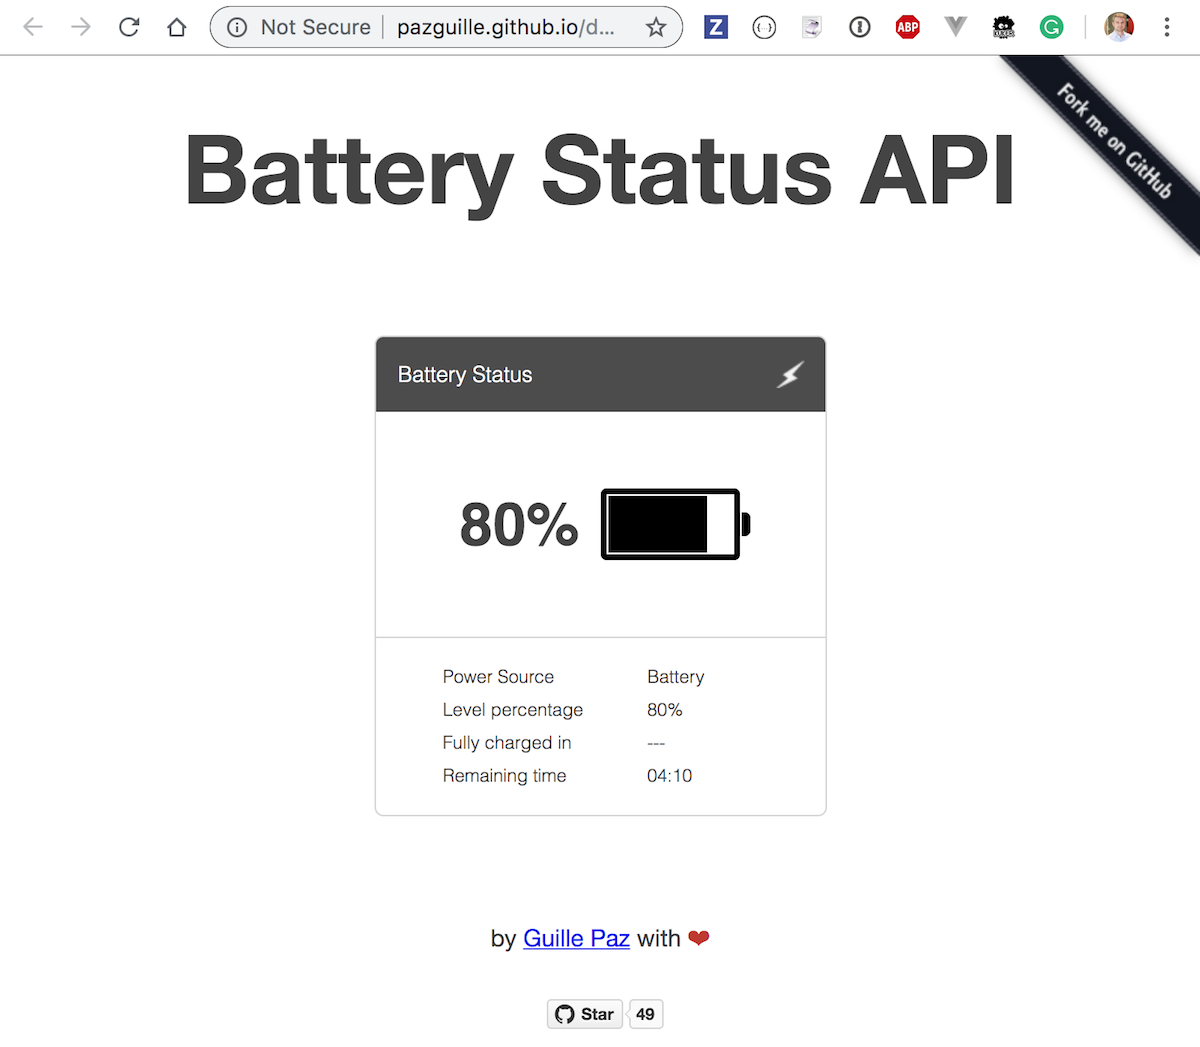 Battery status web page